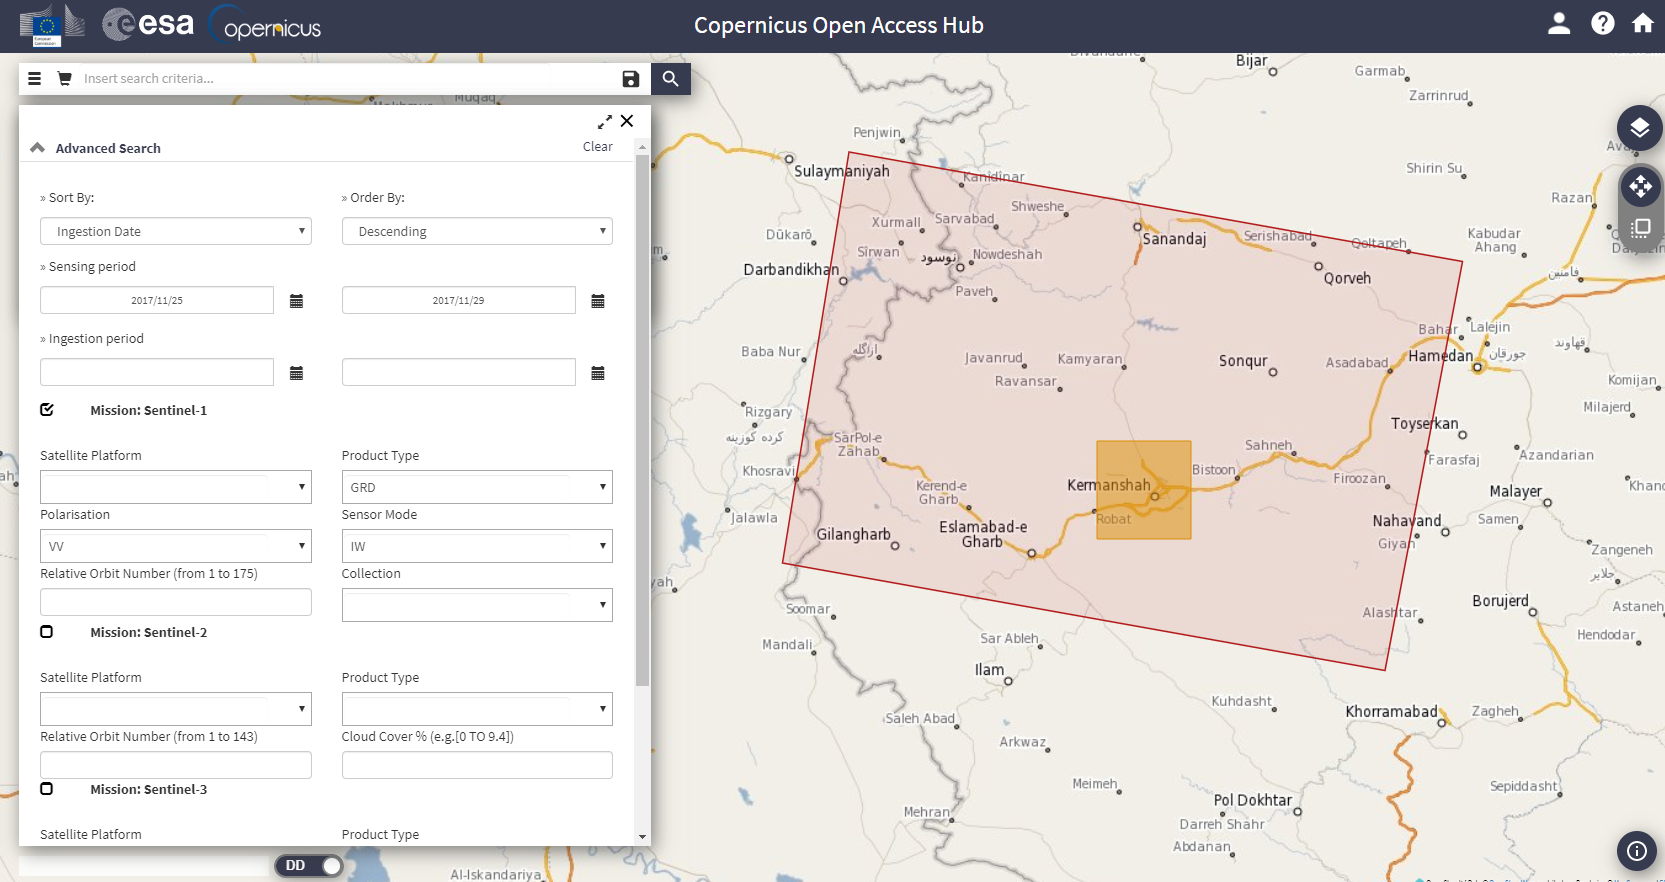 Figure 1: Copernicus Open Access Hub search panel